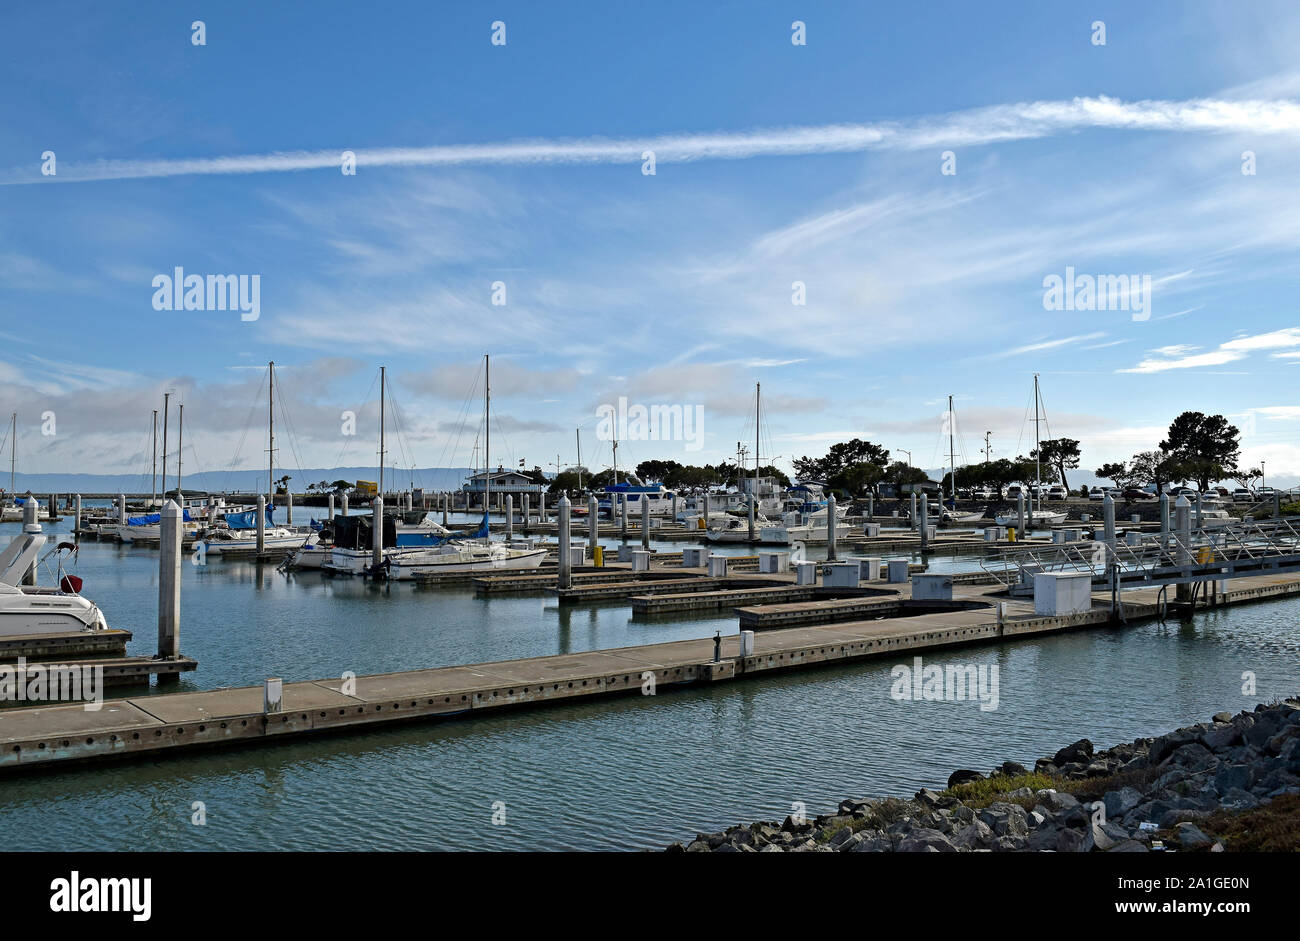 San Leandro Marina on San Francisco Bay, California Stock Photo